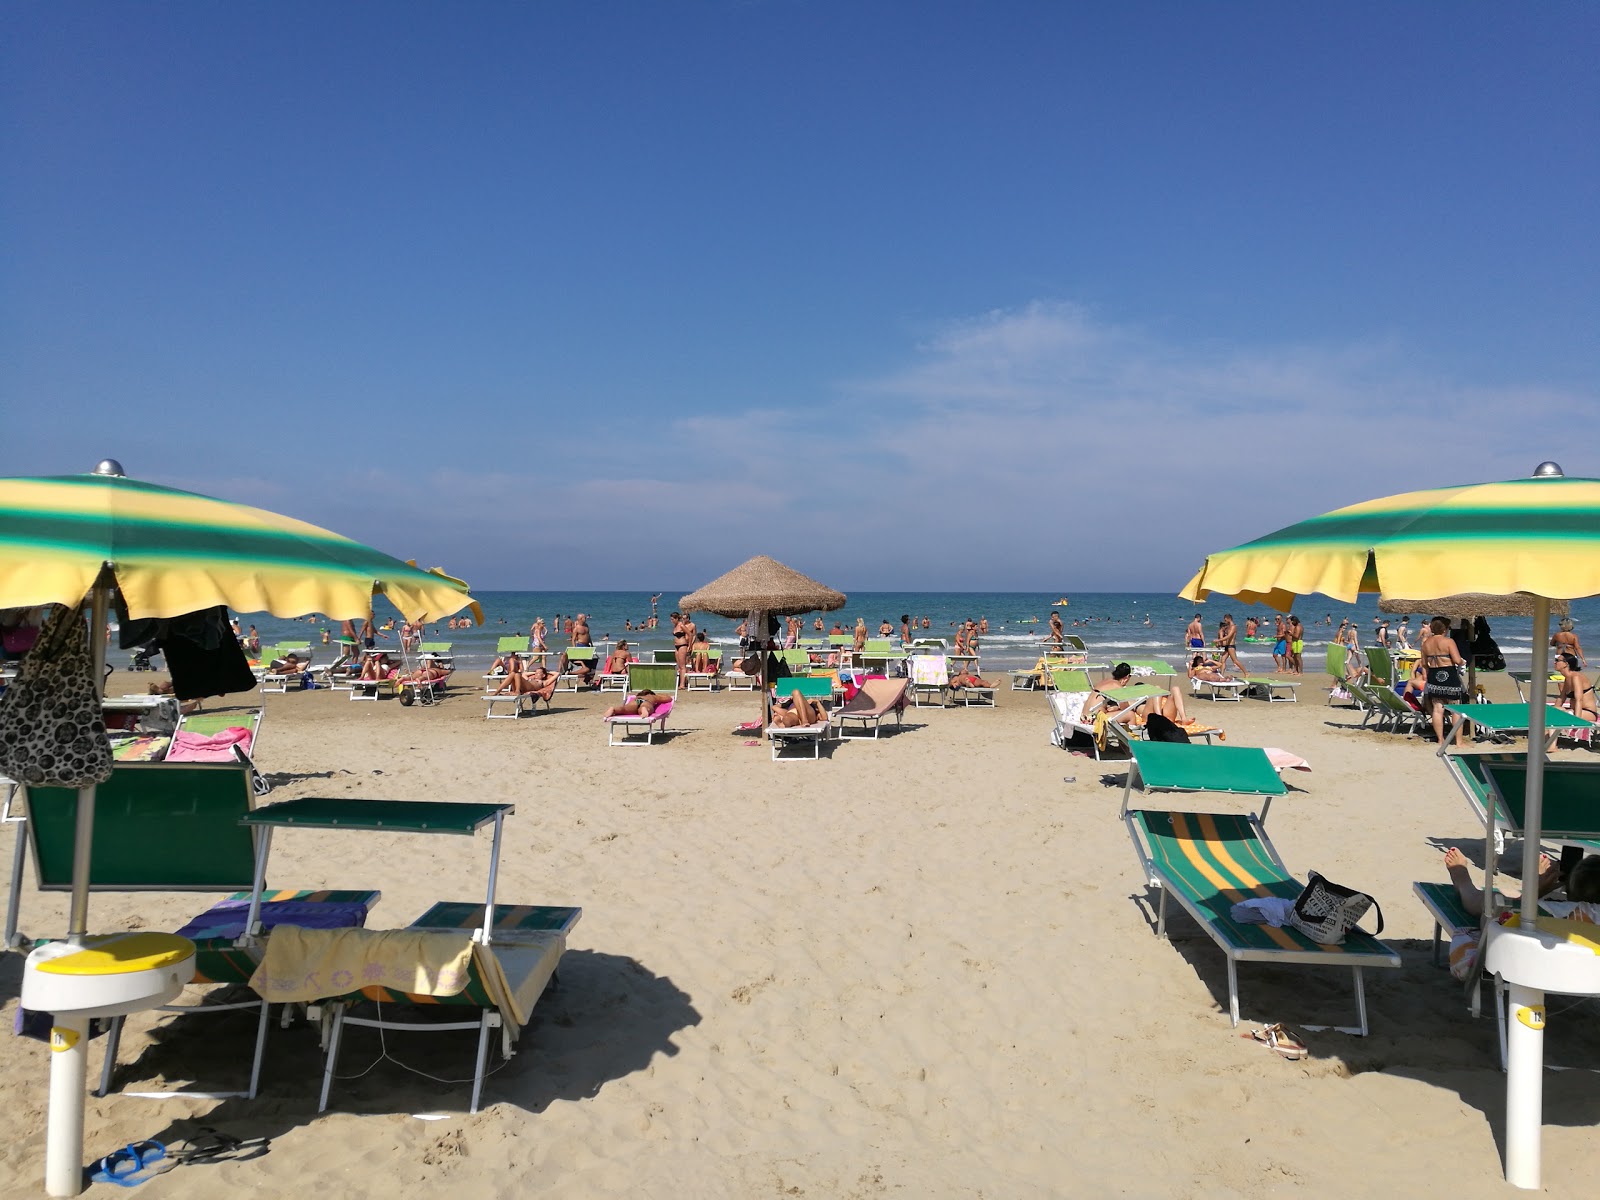 Spiaggia Senigallia'in fotoğrafı - rahatlamayı sevenler arasında popüler bir yer